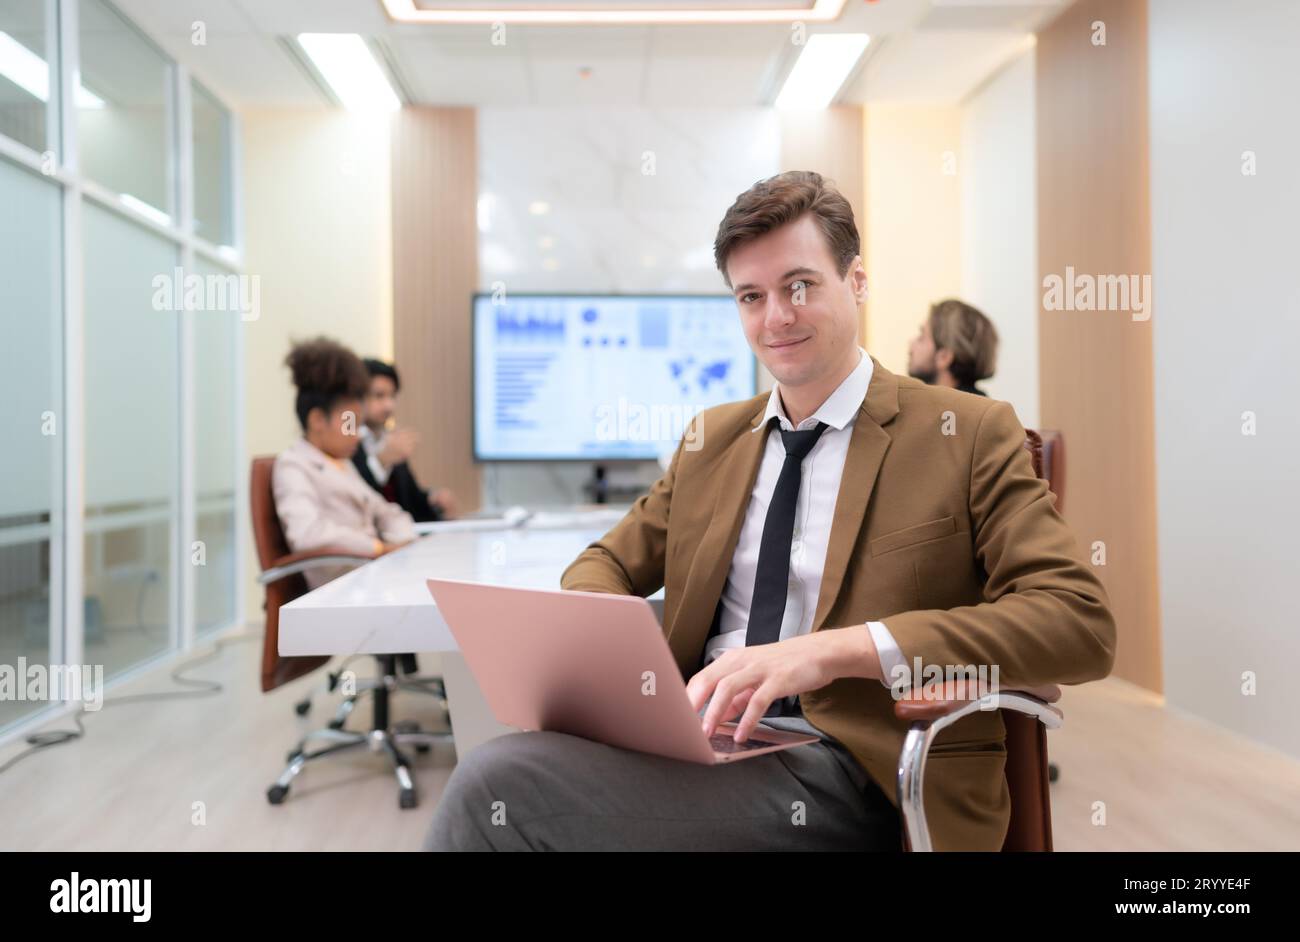 Im Tagungsraum, ein junger Geschäftsmann, der in einem geheimen Treffen mit vielen anderen Geschäftsleuten sitzt, ist die Atmosphäre glücklich Stockfoto